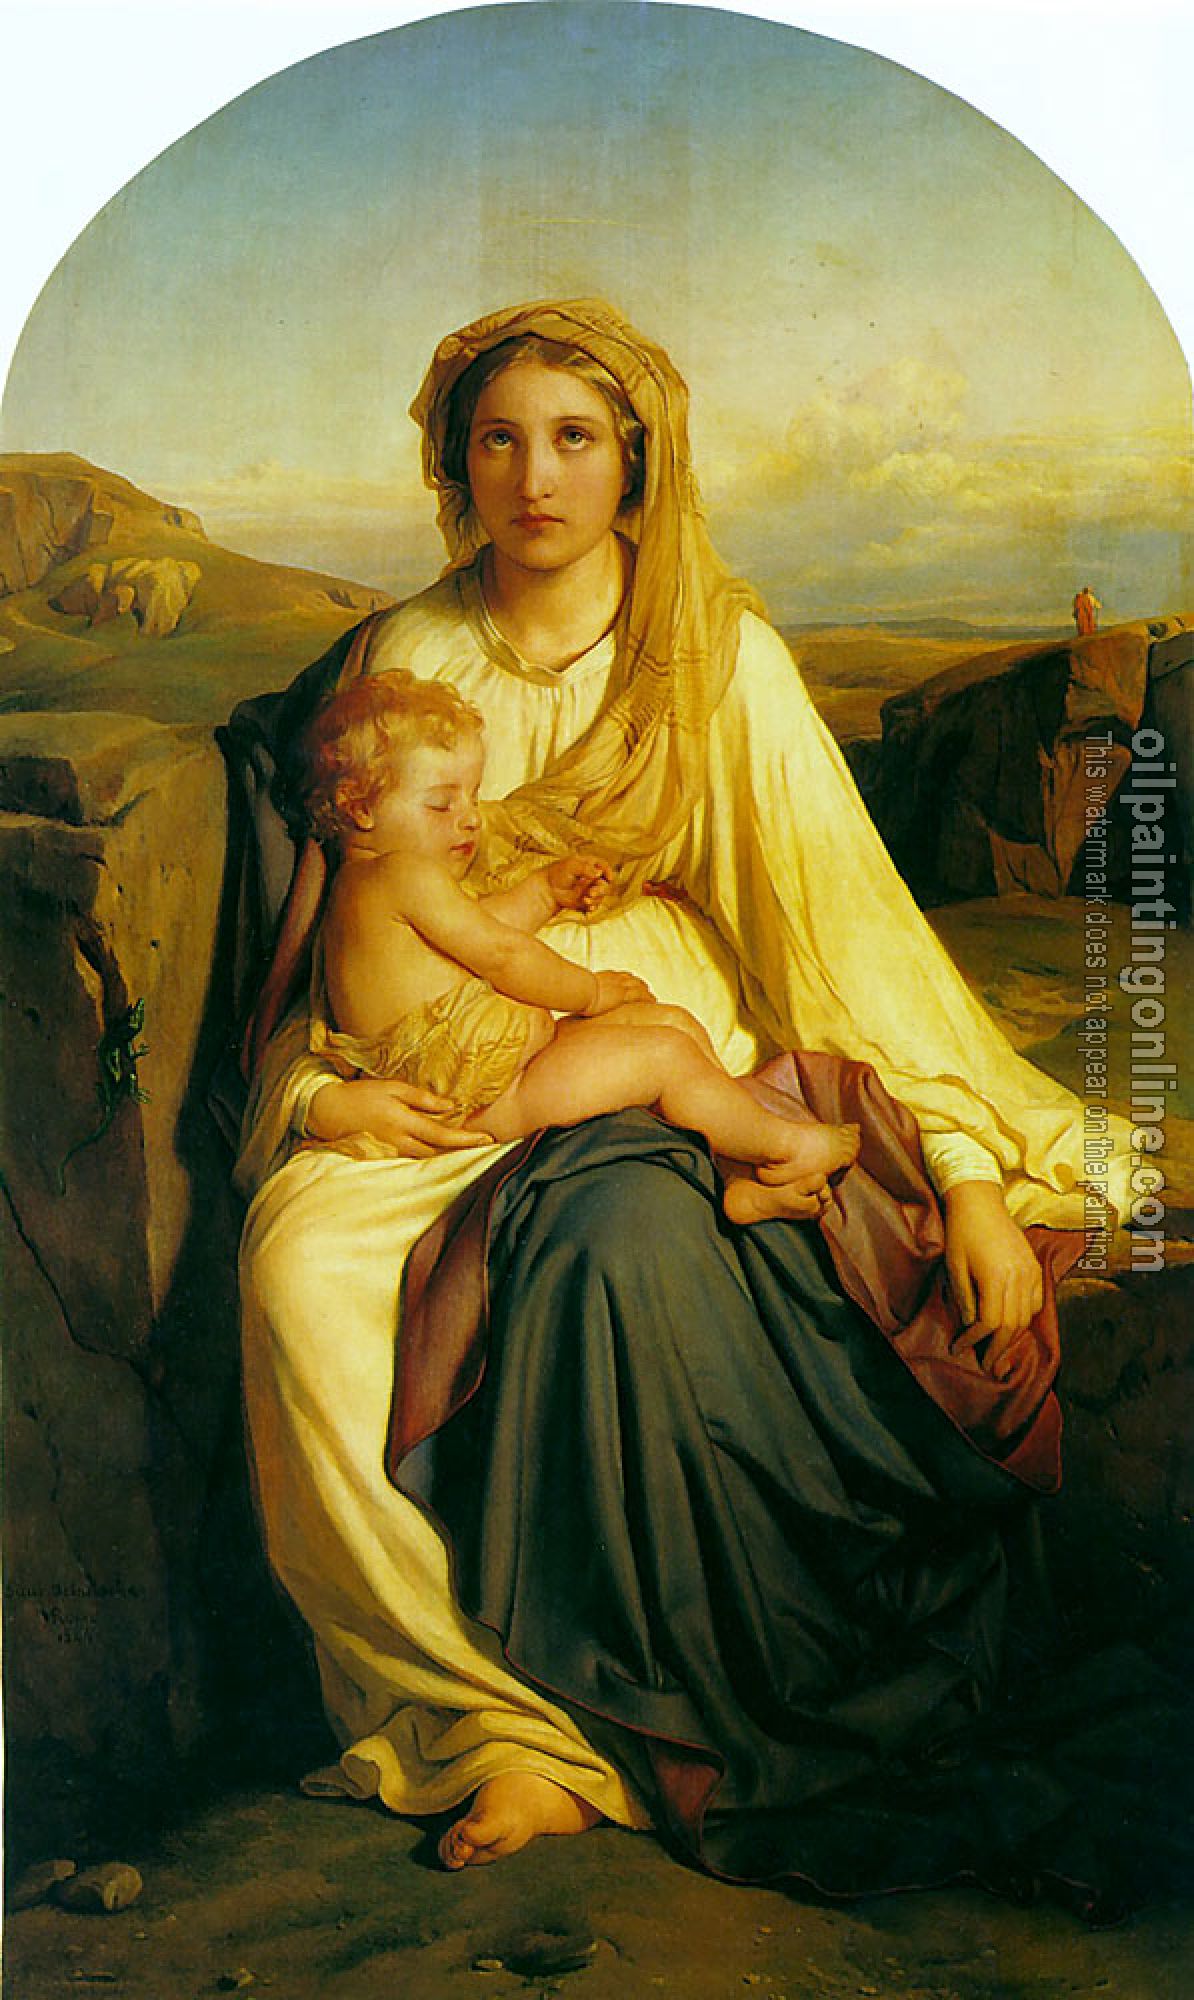 Paul Delaroche - virgin and child